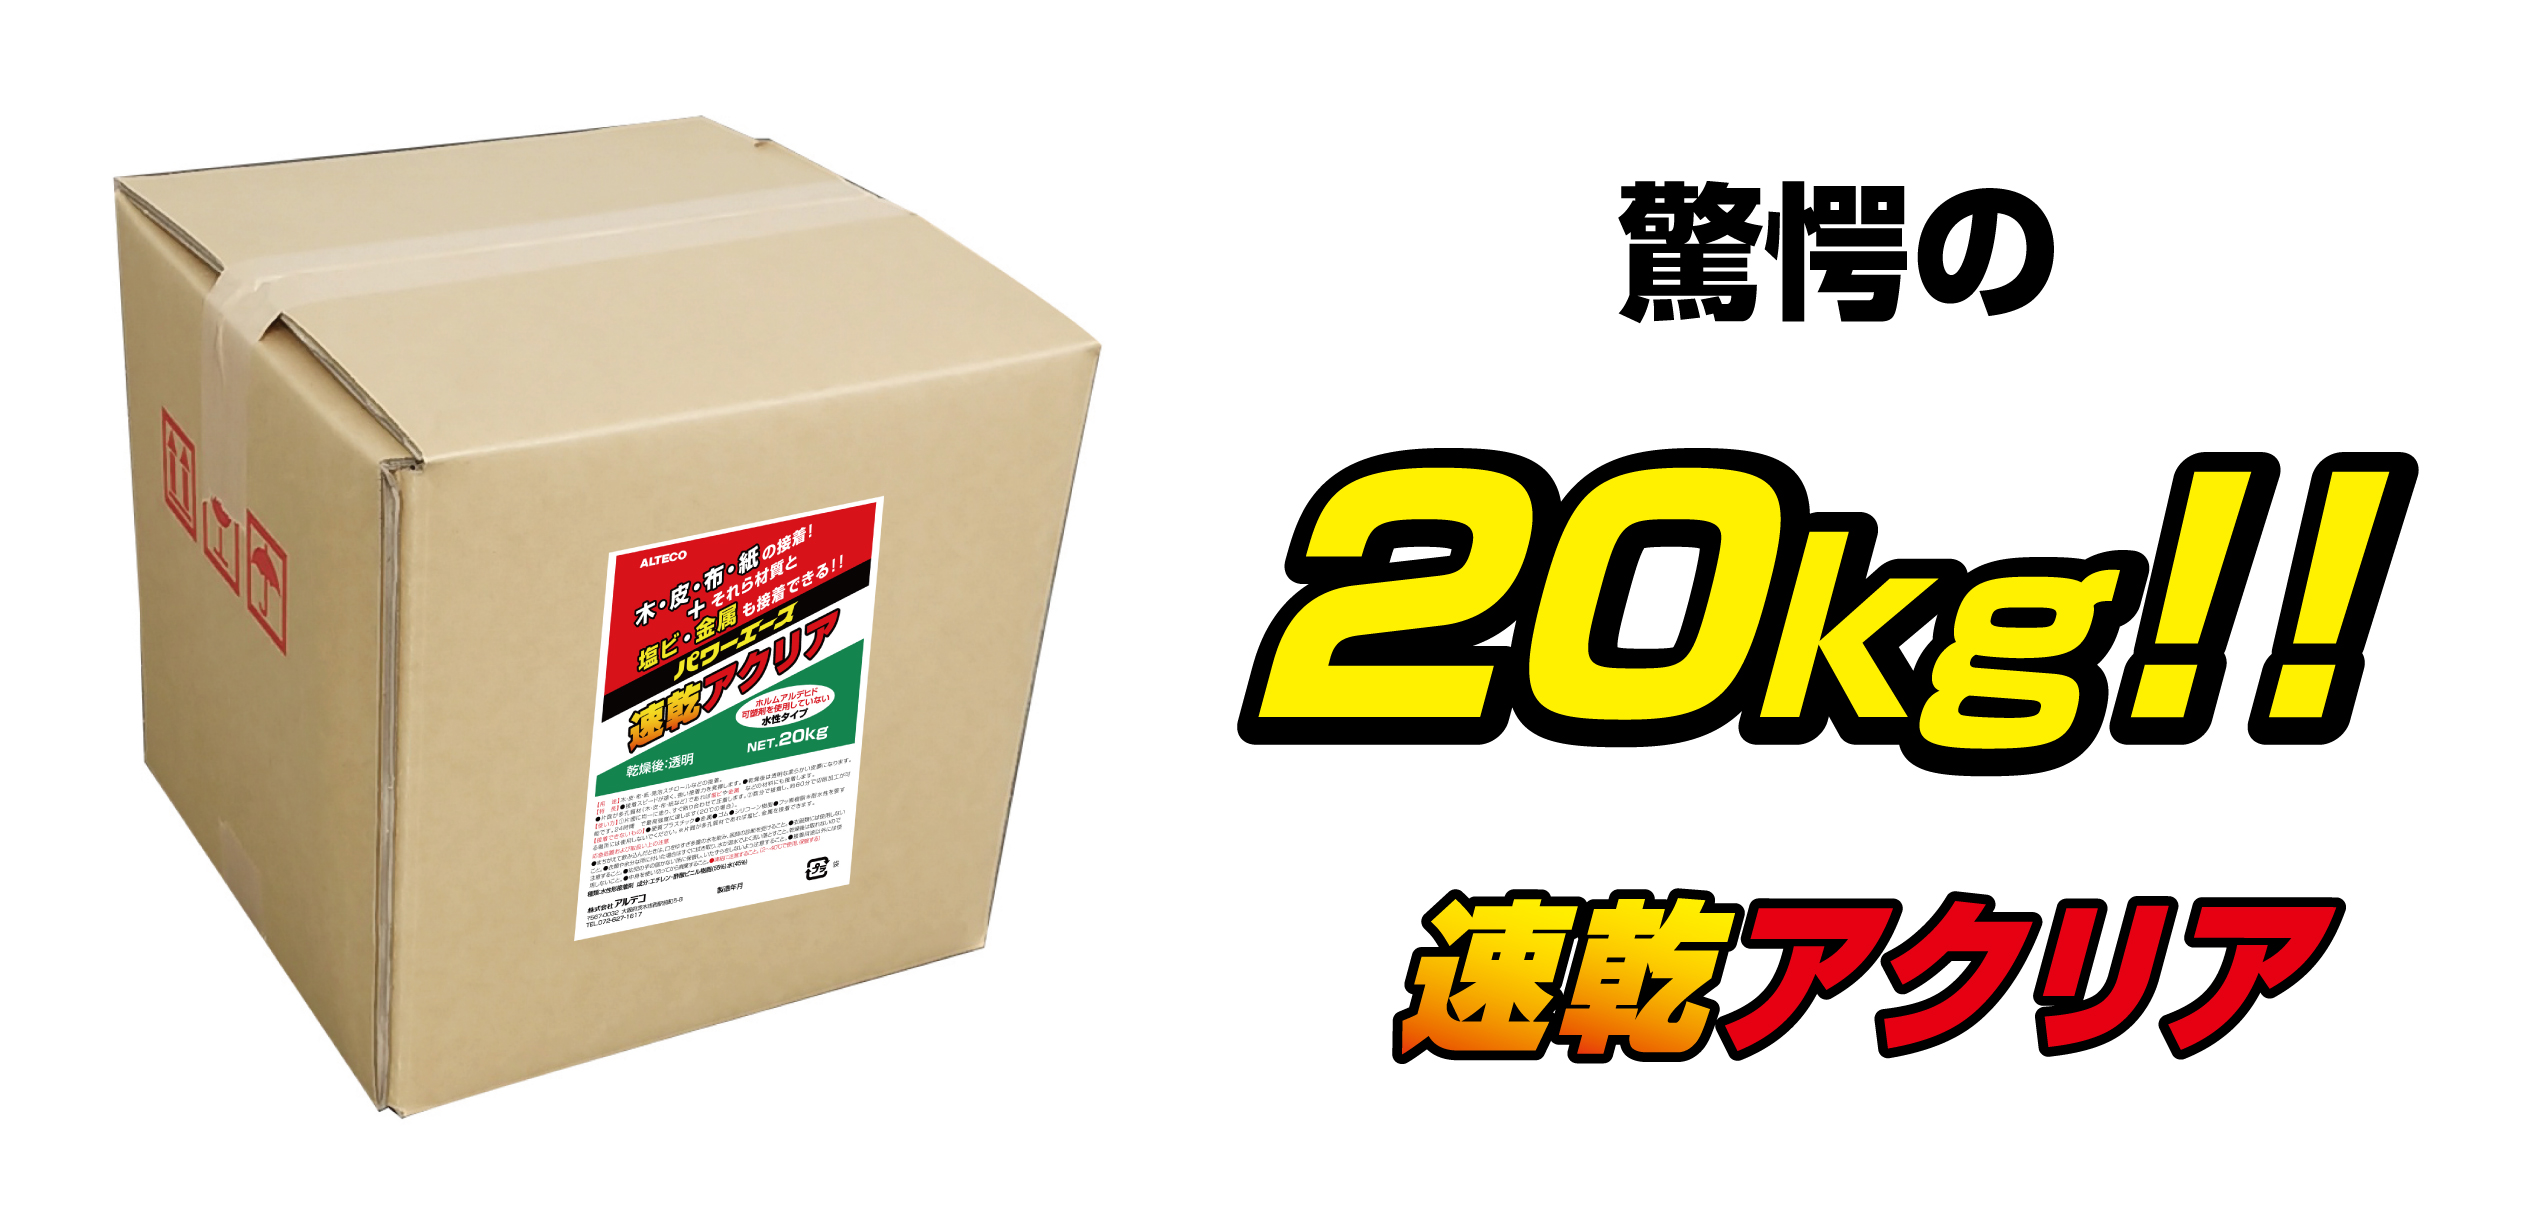 日本人気超絶の 瞬間接着剤 超速硬化型 Z198 100gX10本 ALTECO アルテコ製 木材の節や割れの修理に最適です DIY 板材の補修  shinka017